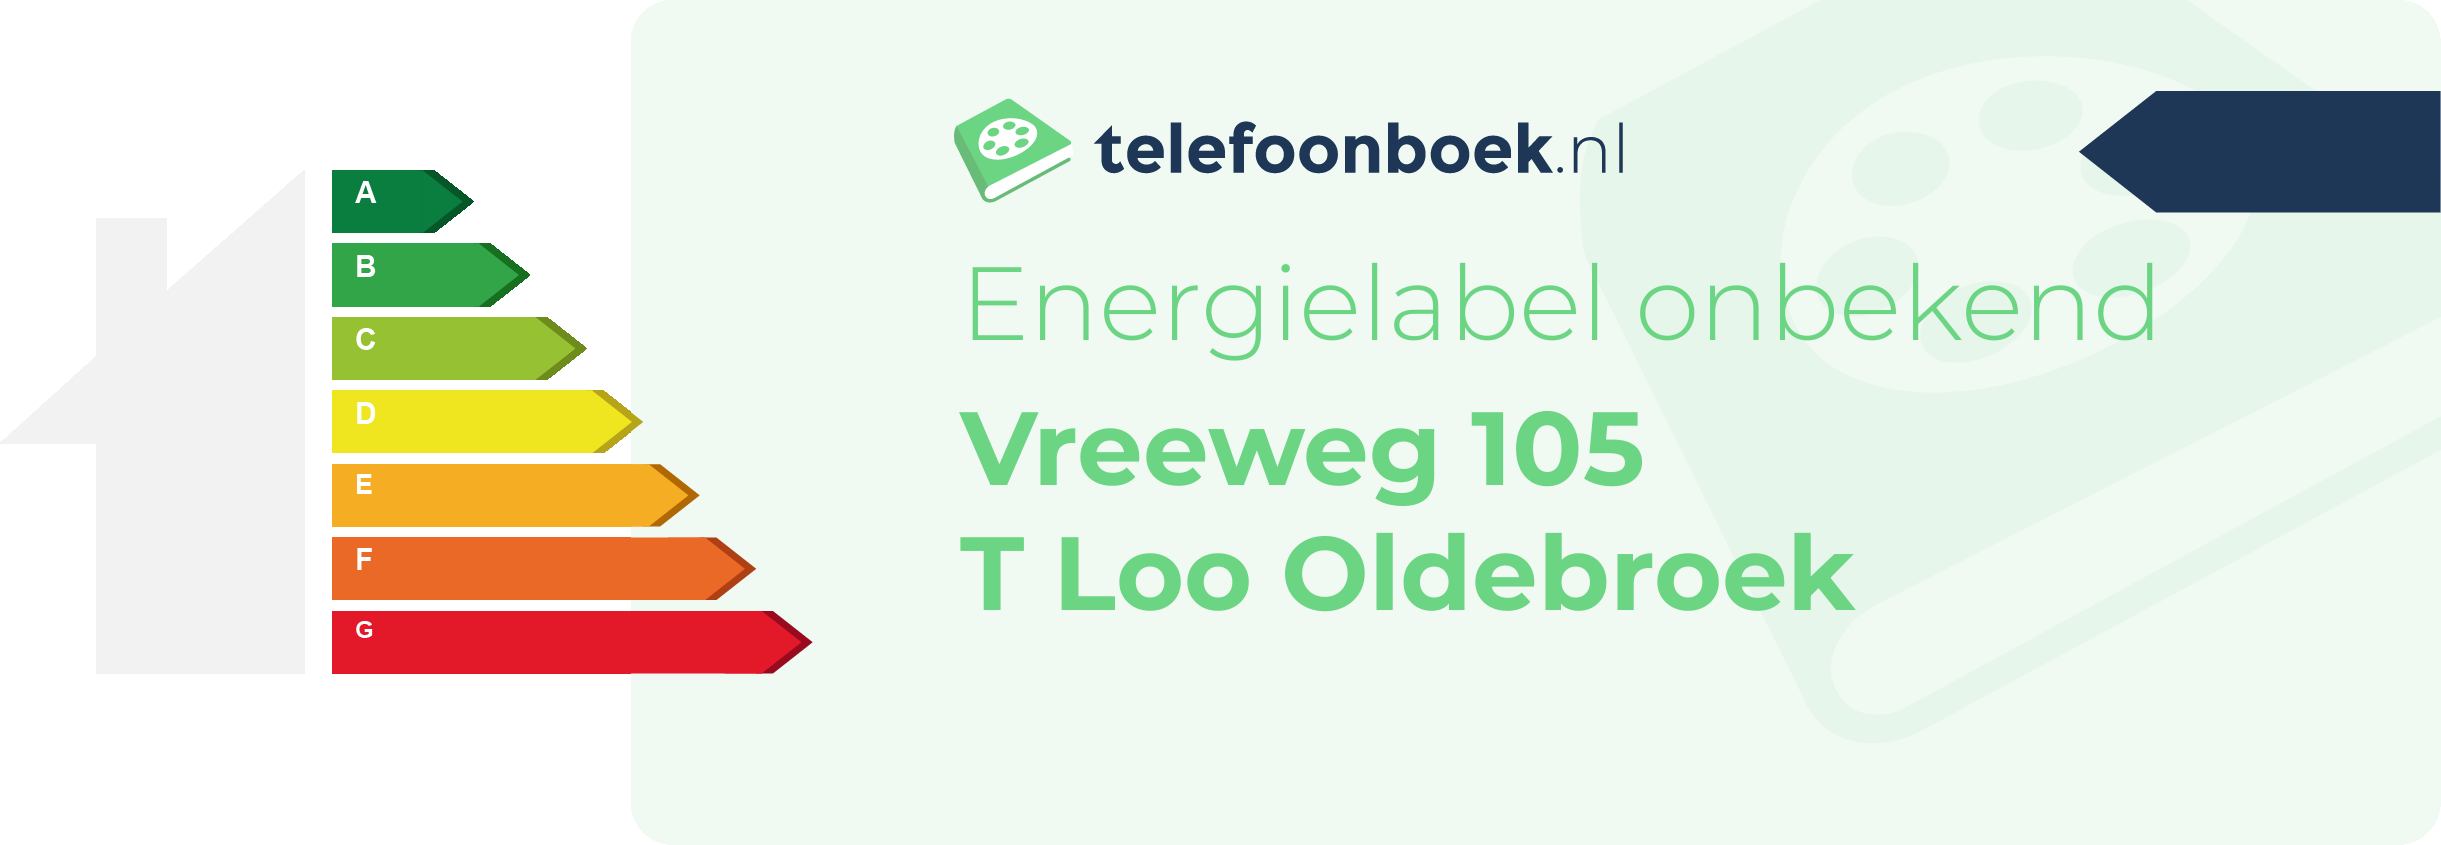 Energielabel Vreeweg 105 T Loo Oldebroek